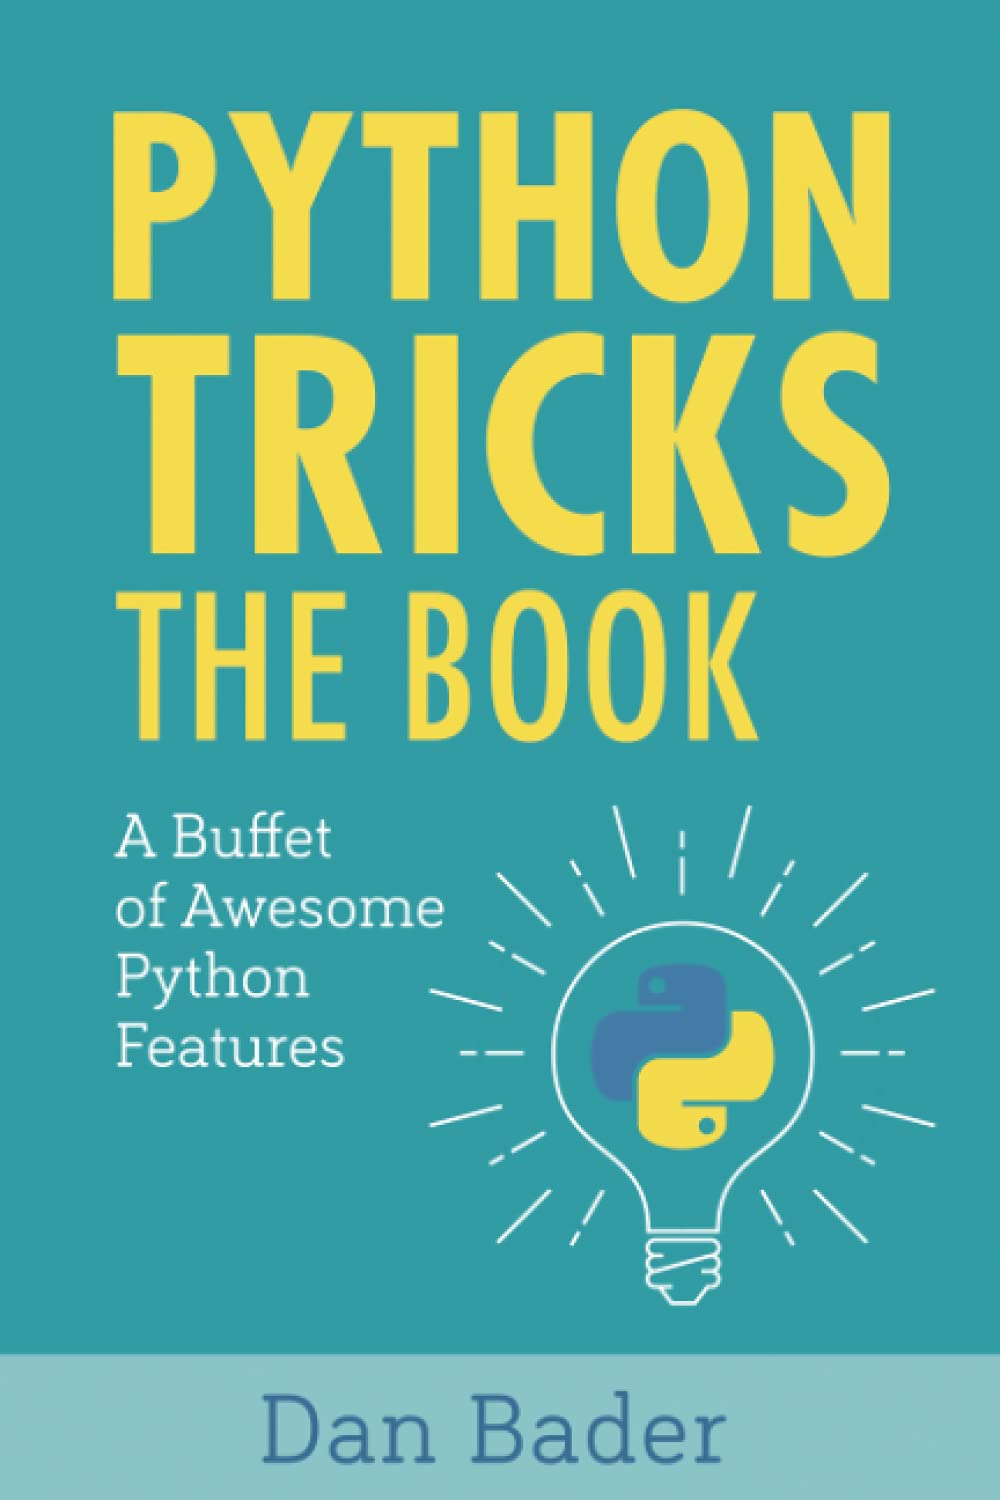 Python Tricks the book